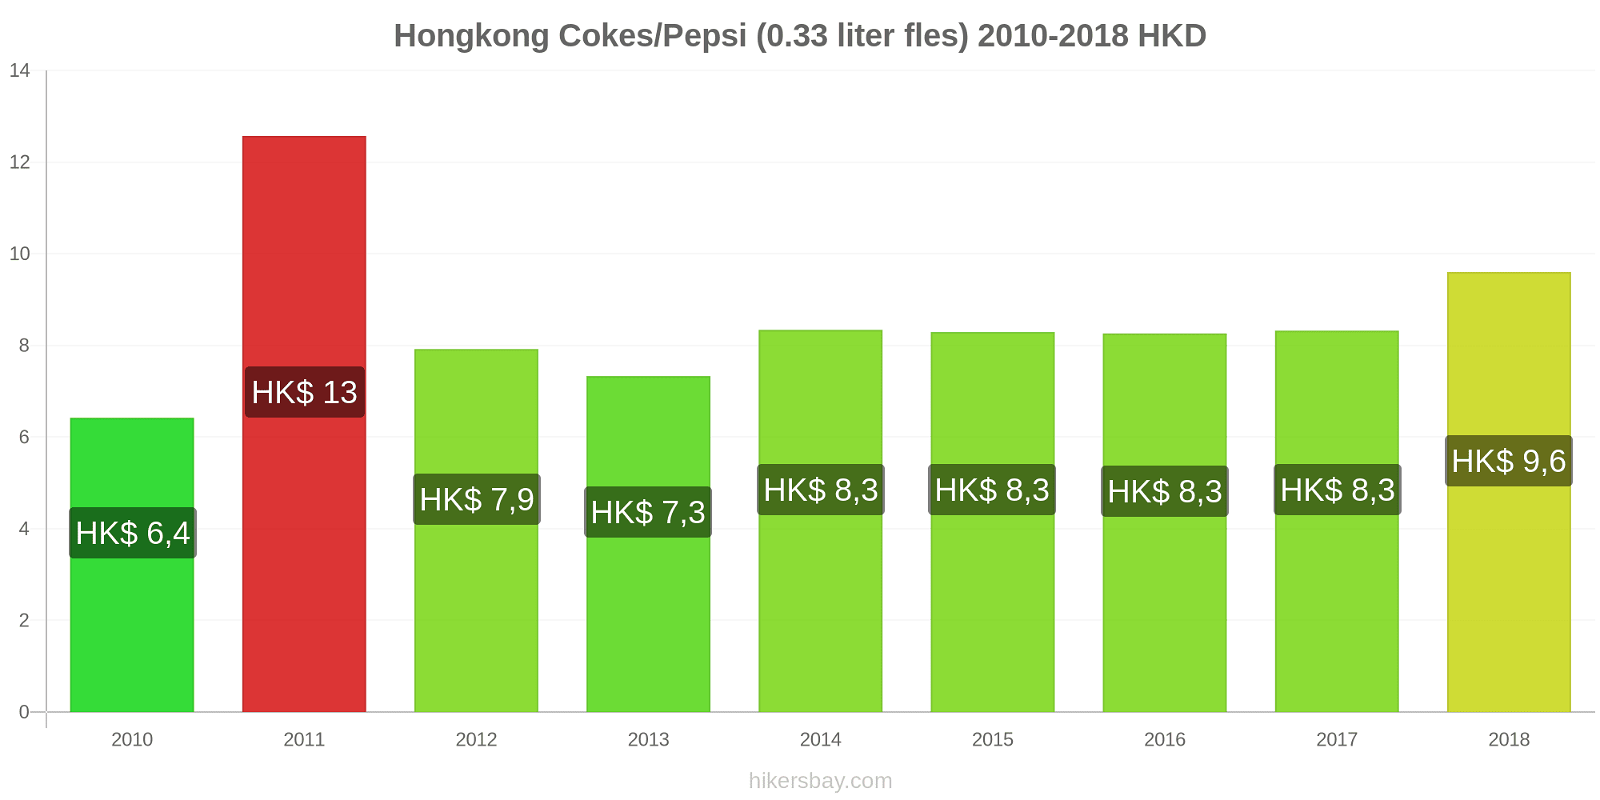 Hongkong prijswijzigingen Coca-Cola/Pepsi (0.33 liter fles) hikersbay.com